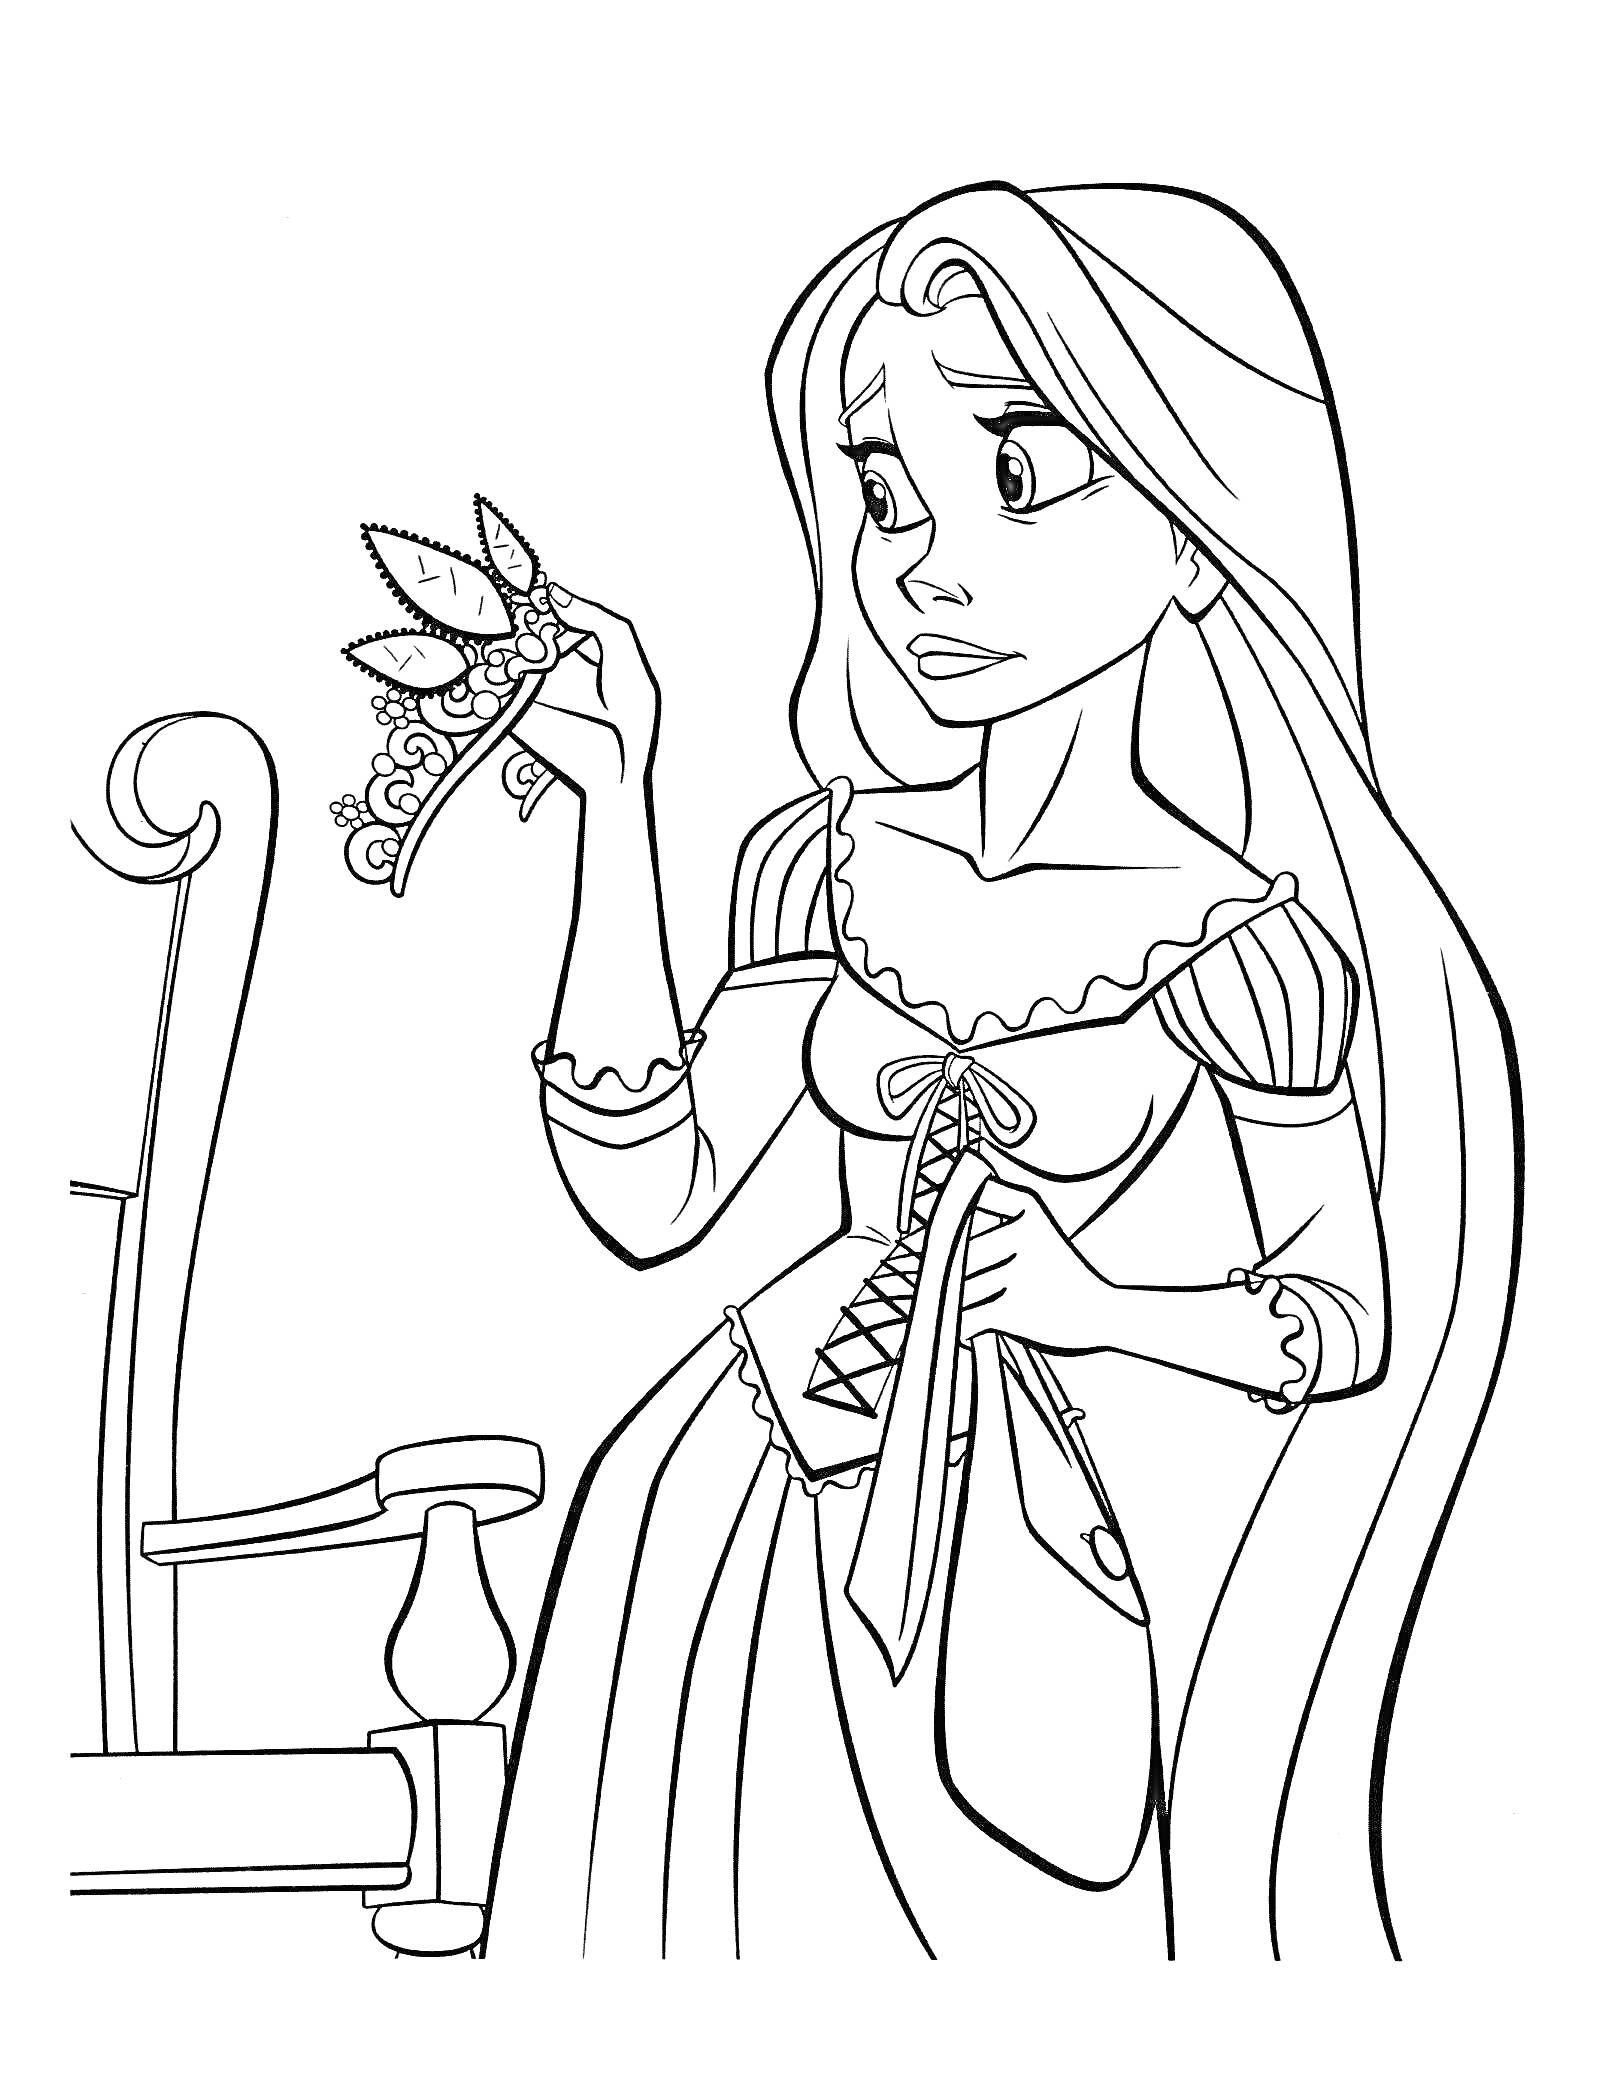 Раскраска Рапунцель с длинными волосами, держащая в руке корону, рядом стул